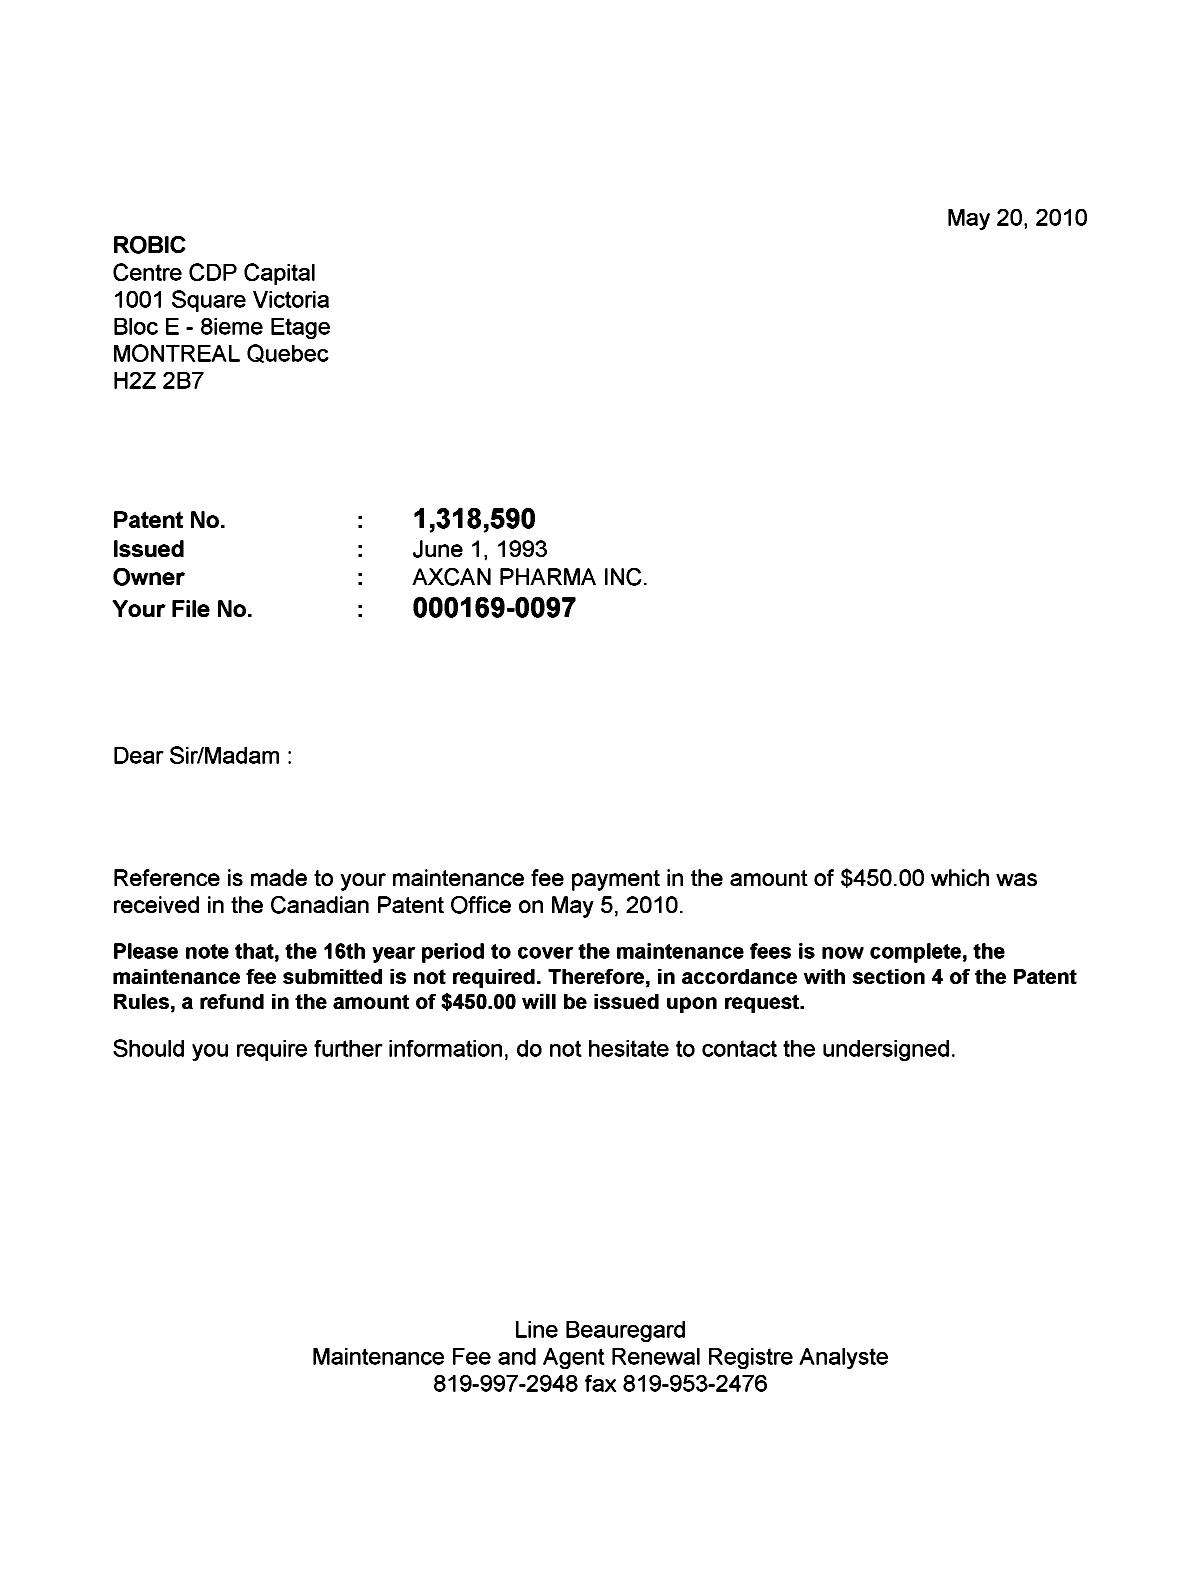 Document de brevet canadien 1318590. Correspondance 20100520. Image 1 de 1